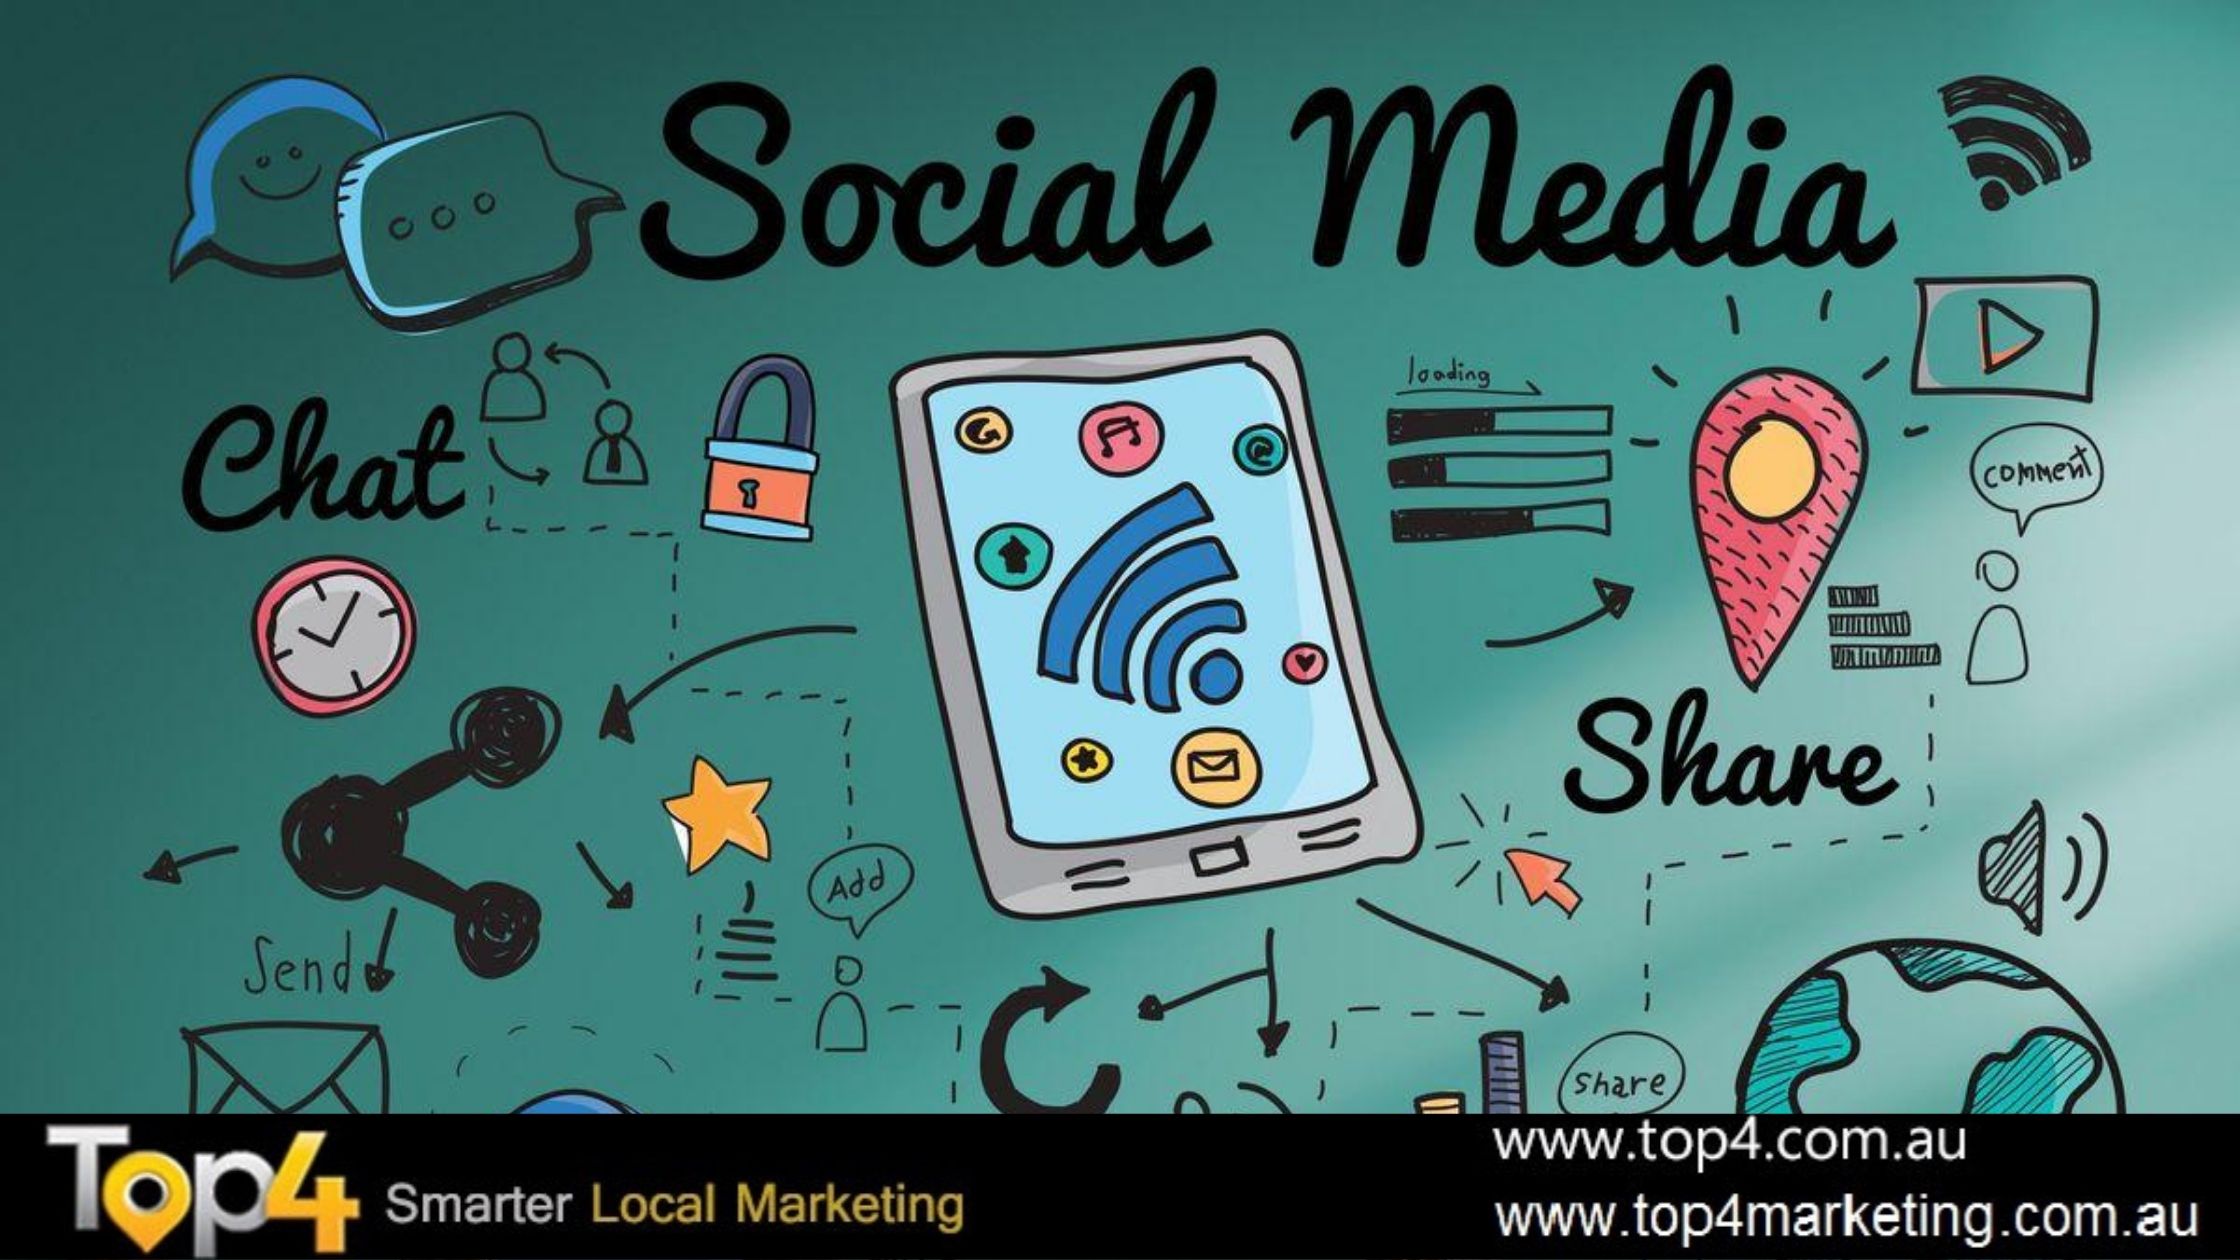 Social Media Marketing - Top4 Marketing